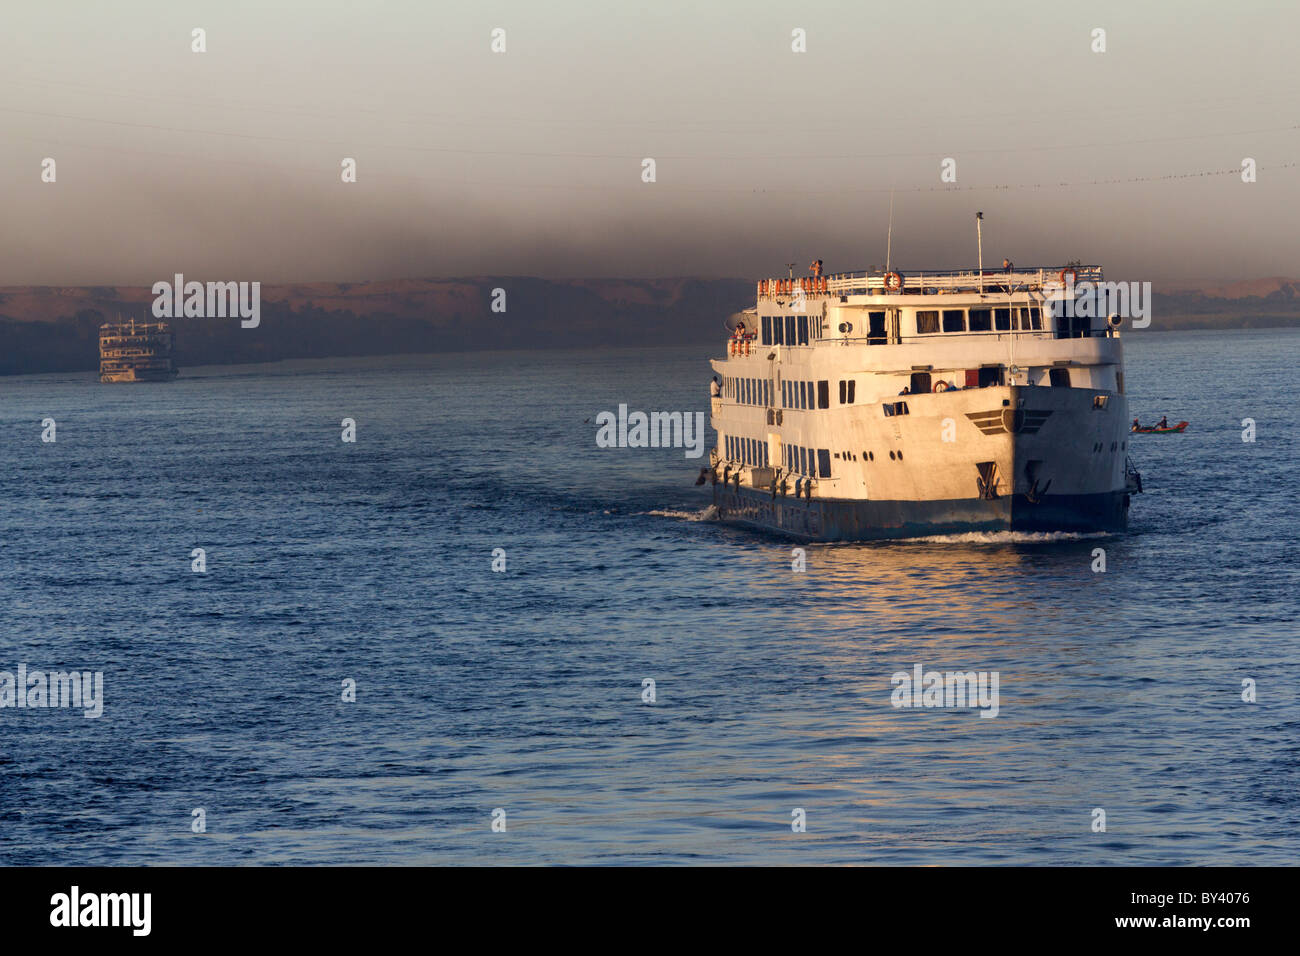 La pollution de l'Nile cruiser, Egypte Banque D'Images